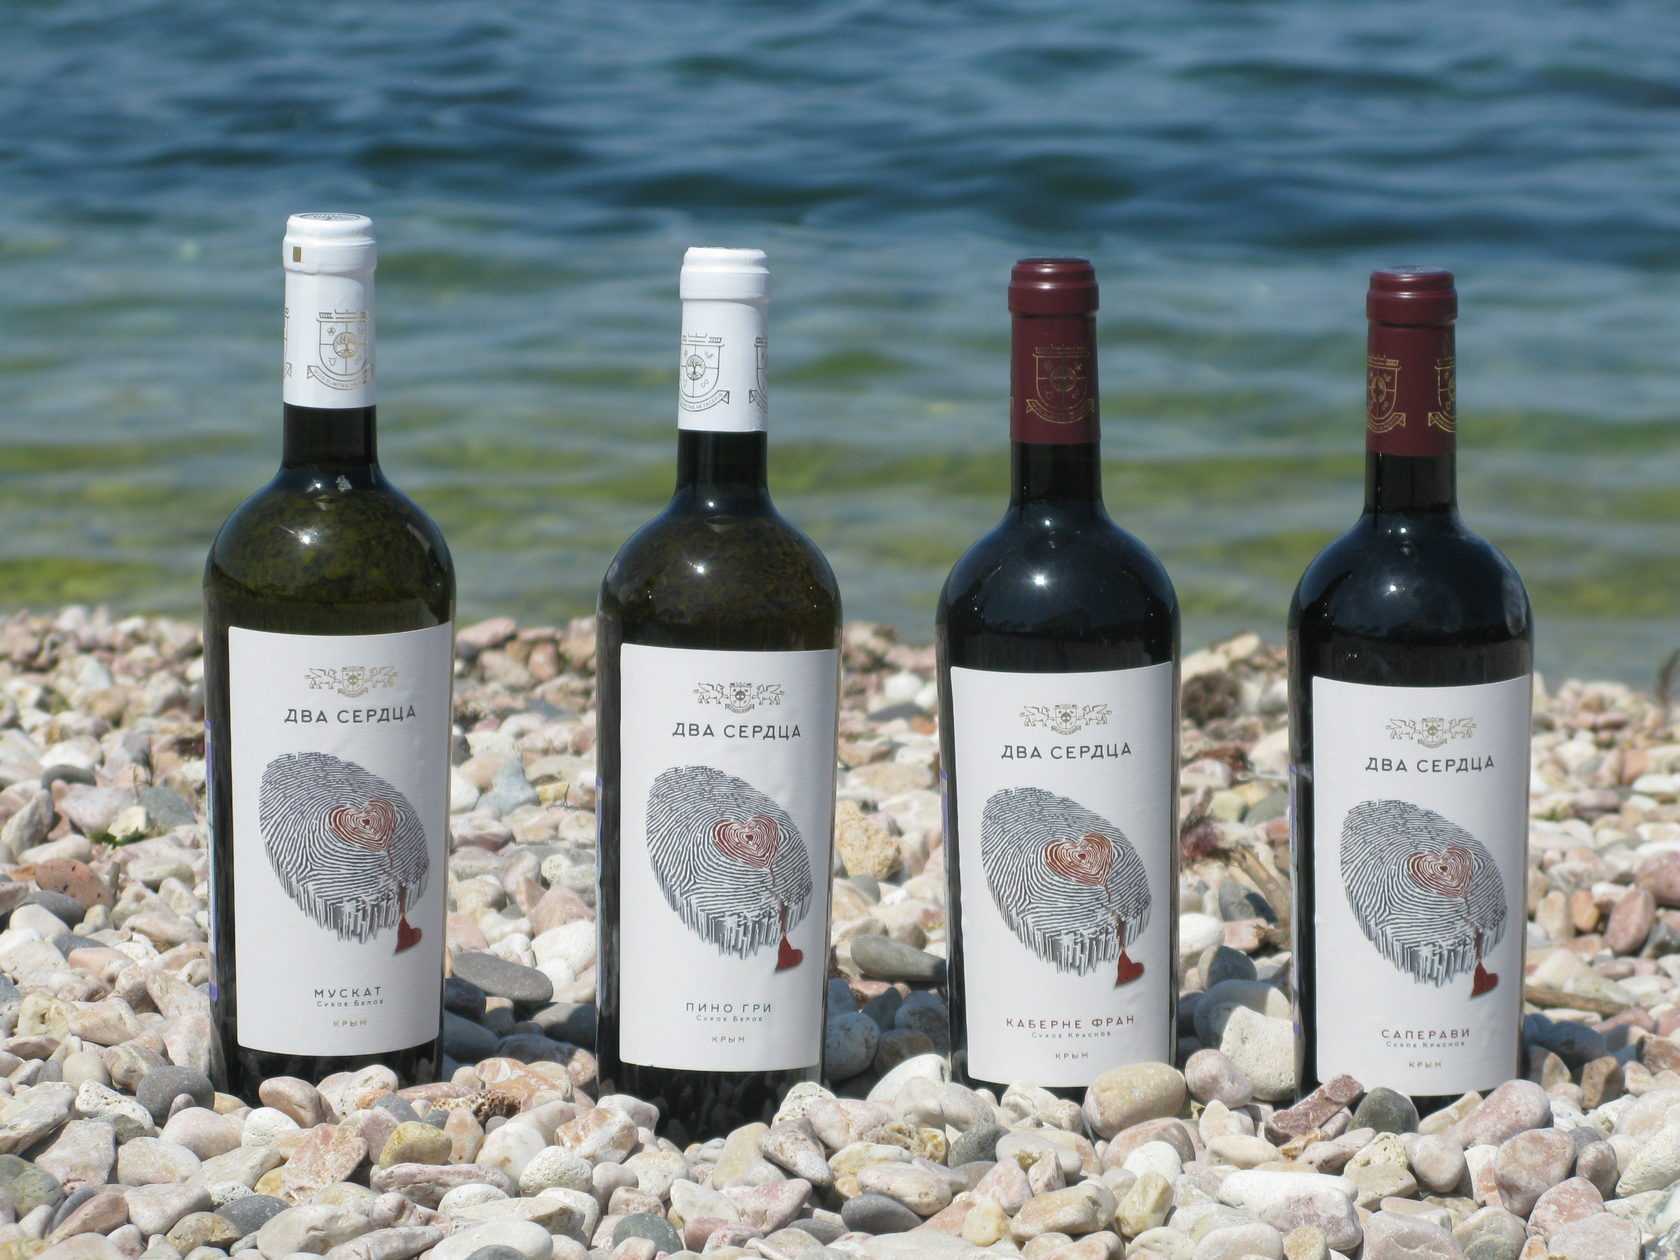 «винный гид россии» 2021: рейтинг самых качественных вин страны